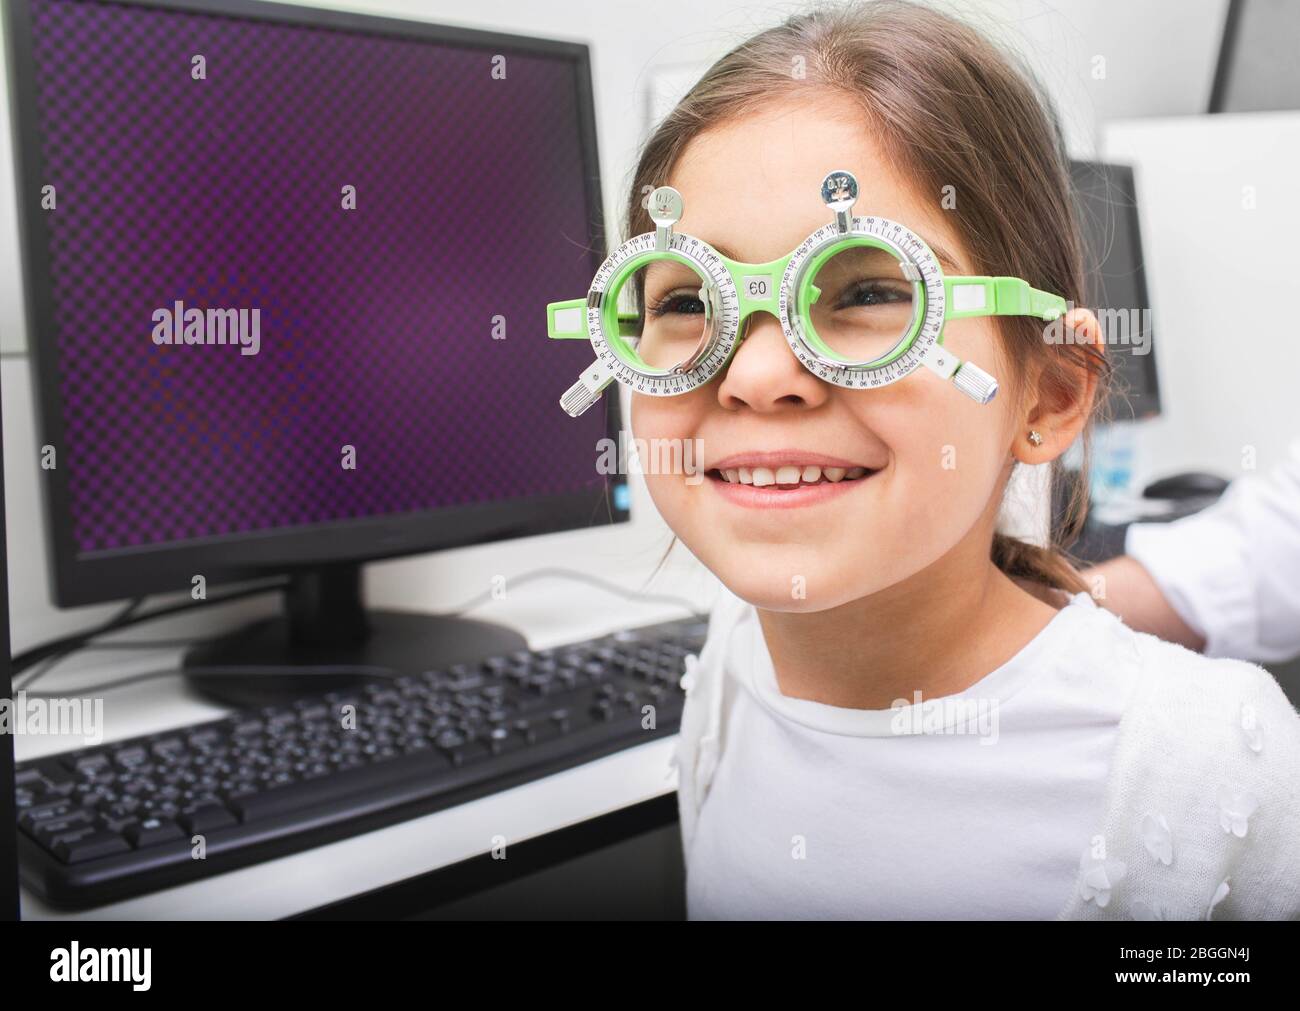 Petite fille avec des lunettes spéciales reçoit le traitement pour ses yeux. Traitement par amblyopie. Traitement logiciel-informatique de l'acuité visuelle Banque D'Images